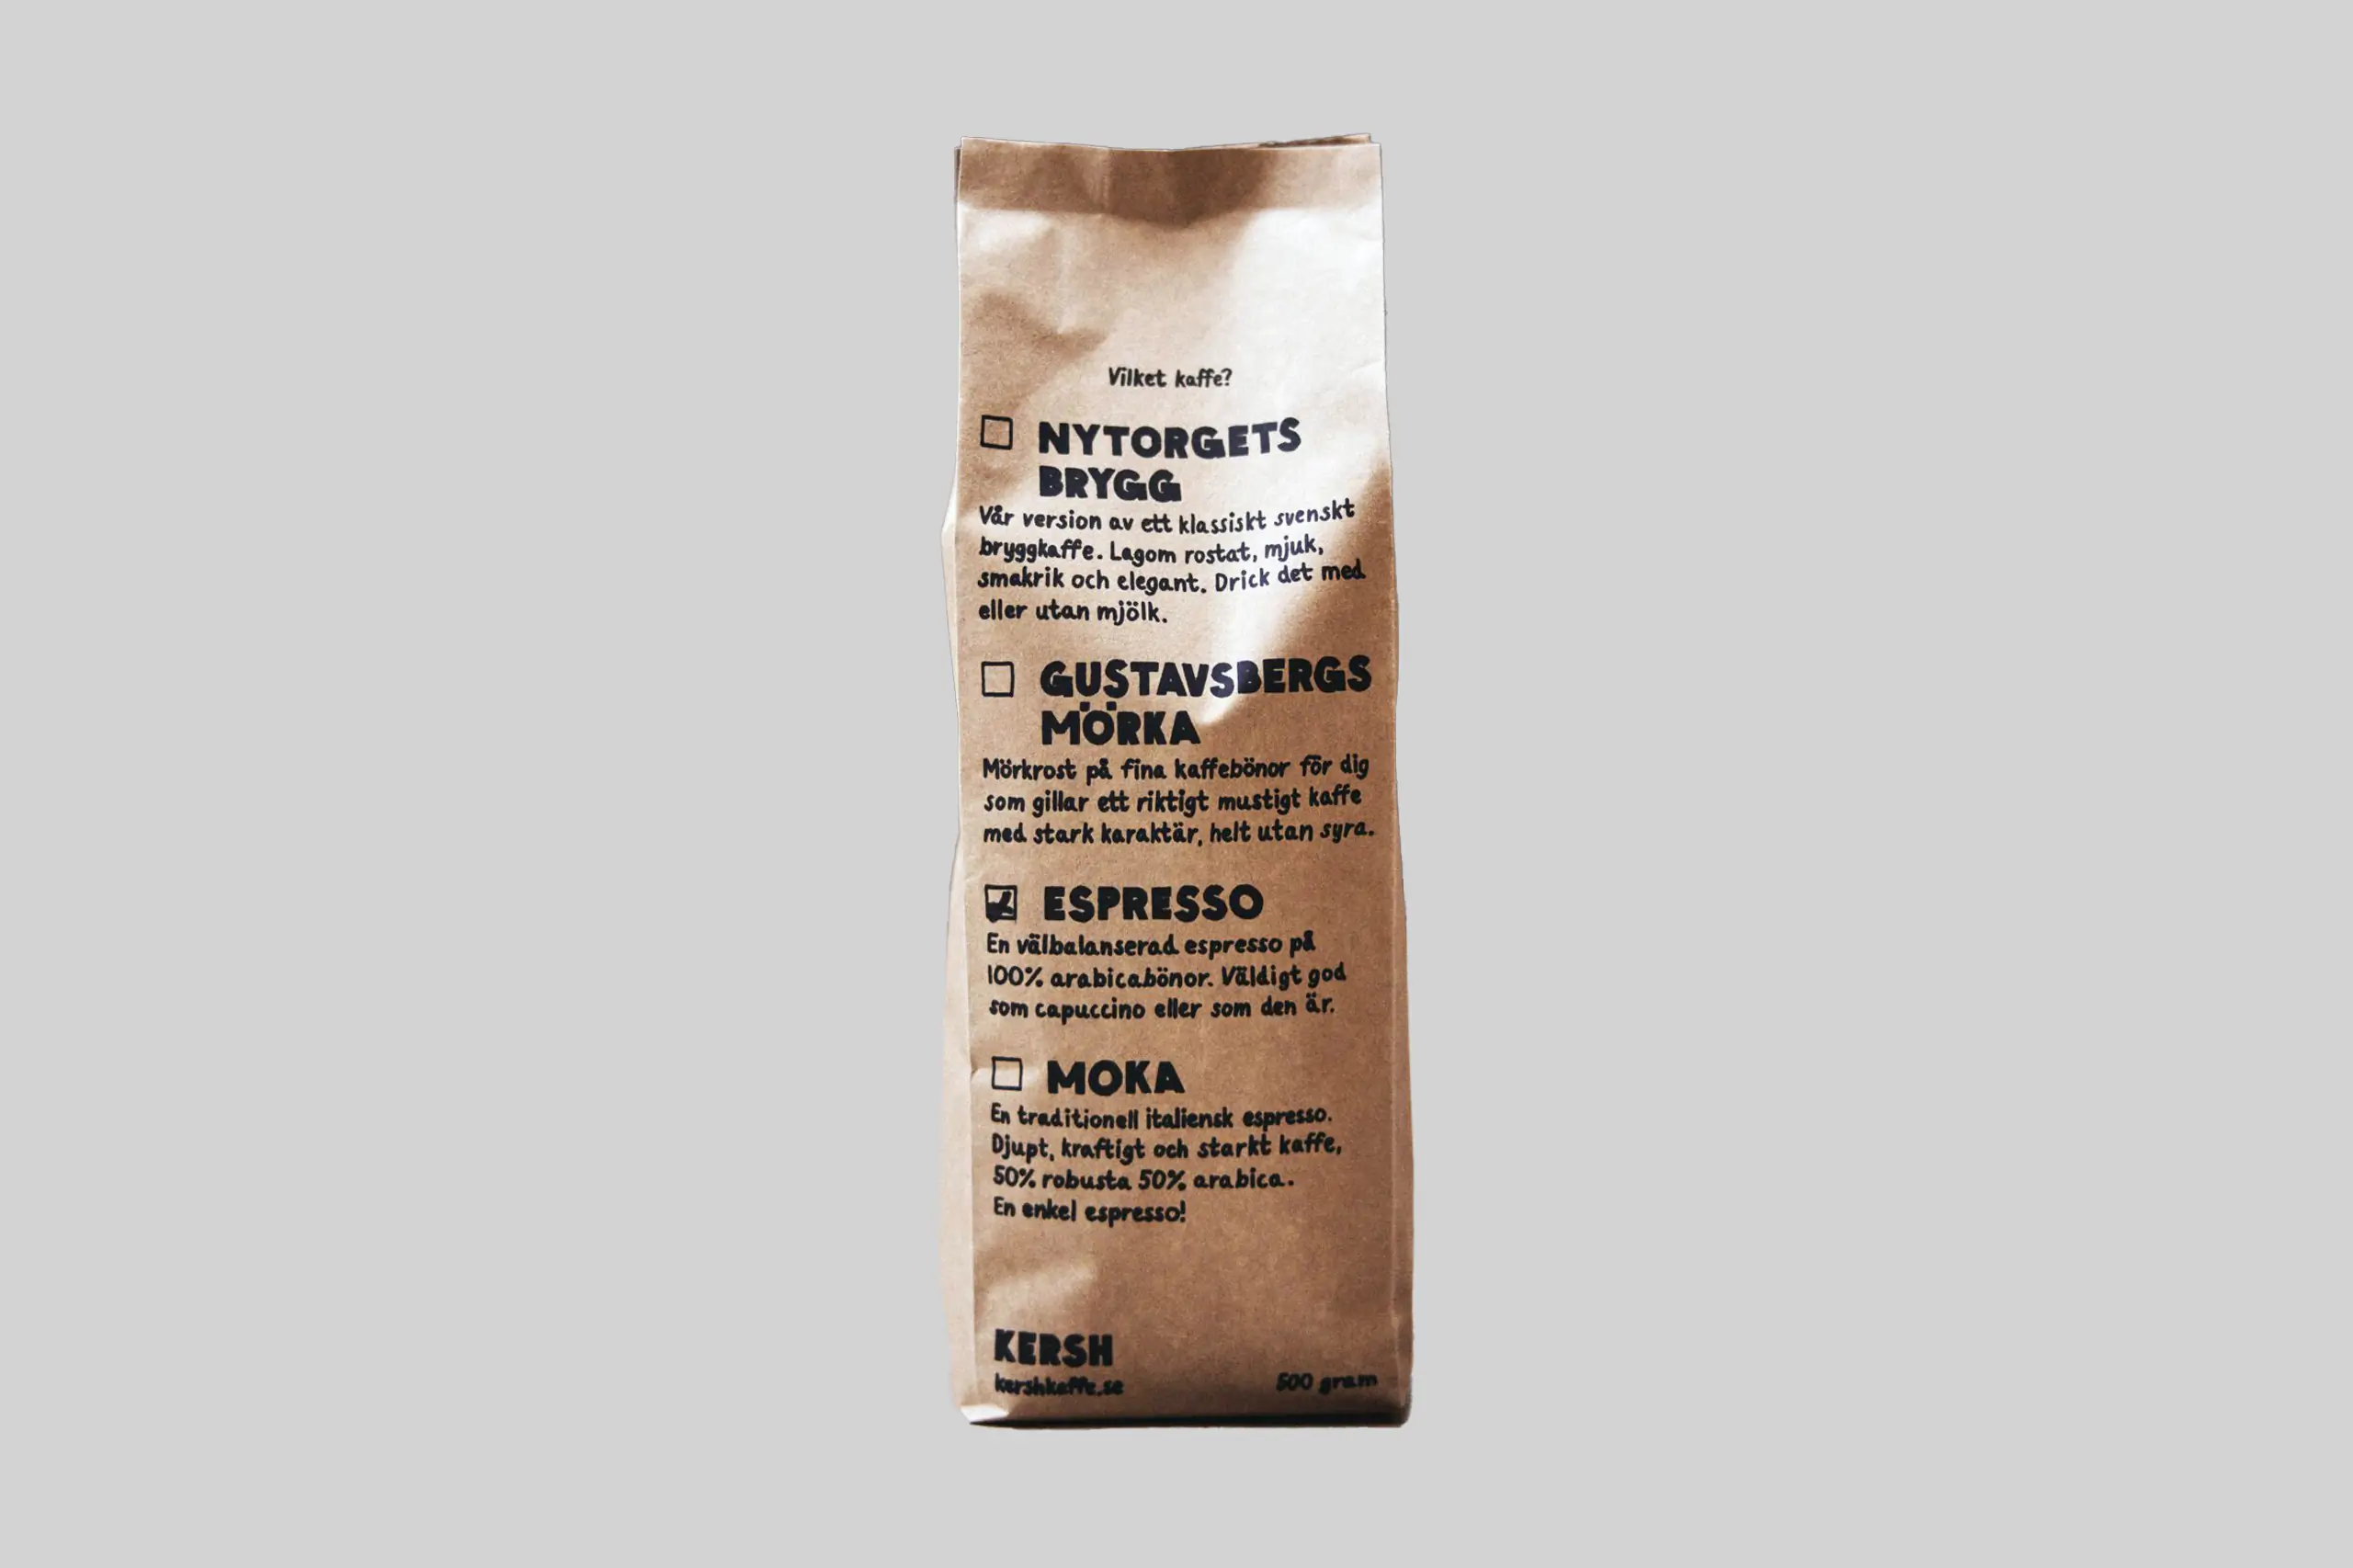 KERSH kaffe, packaging